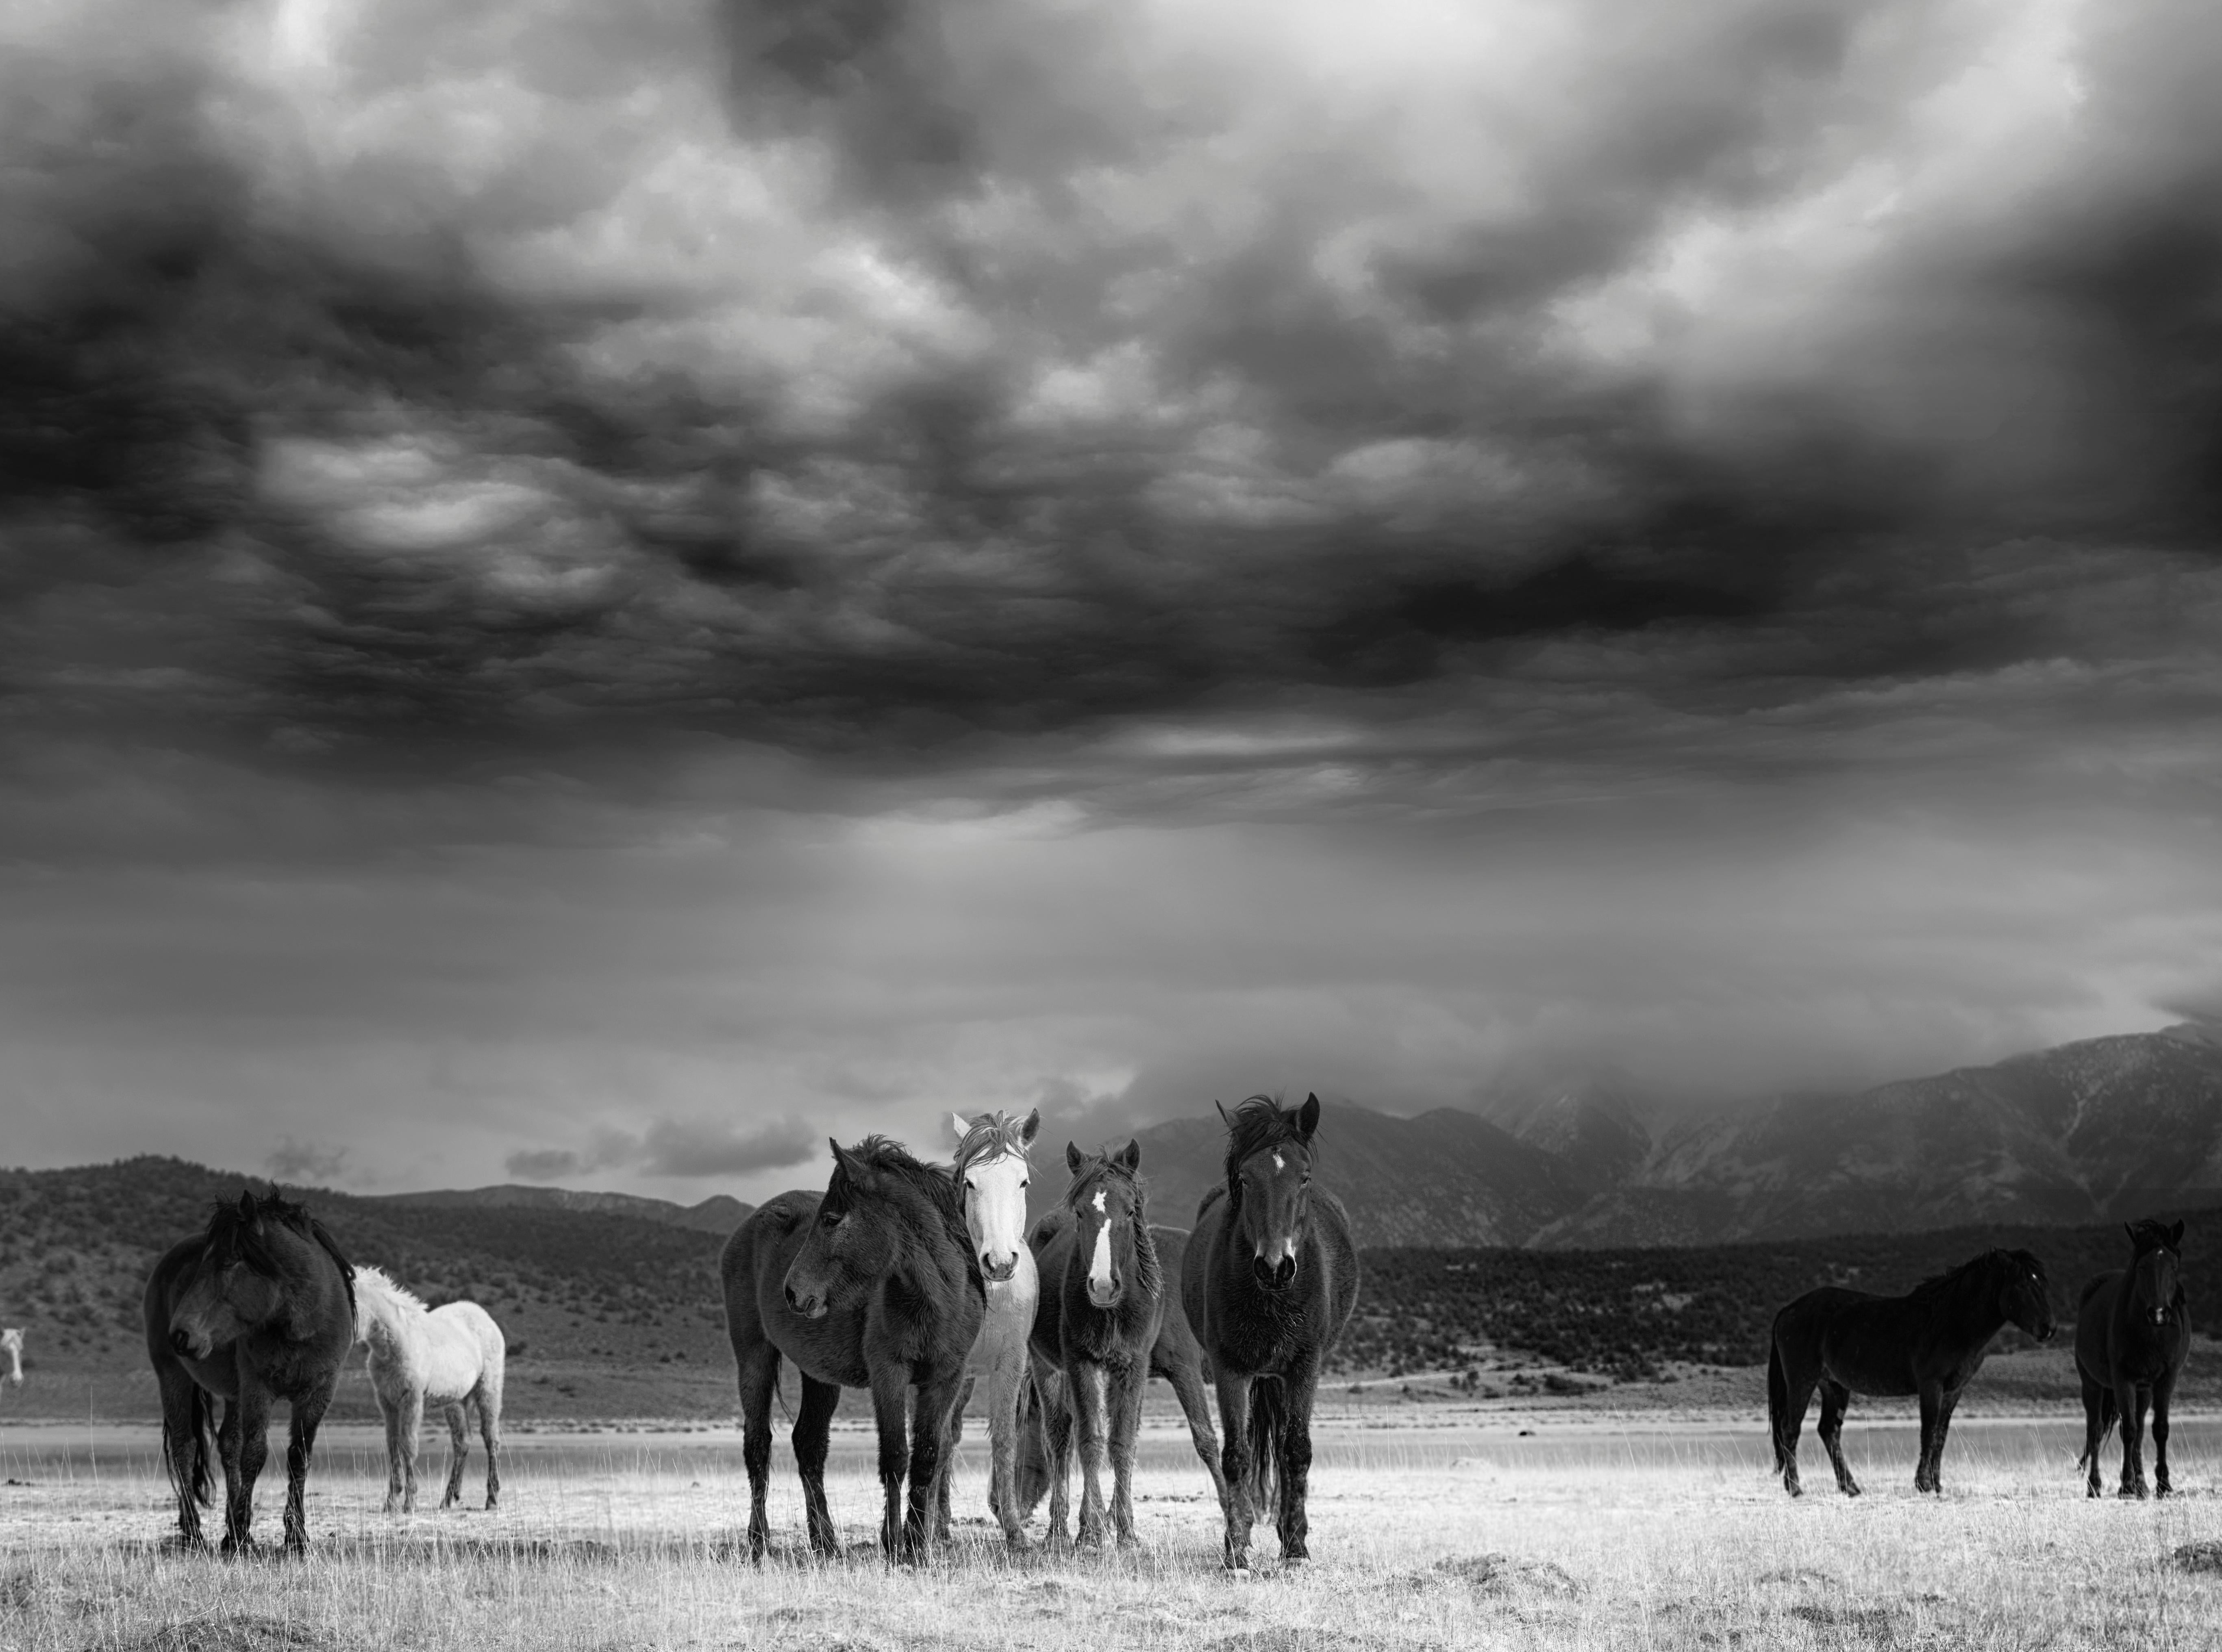 Shane Russeck Black and White Photograph – 36x48 "The Calm" Schwarz-Weiß-Fotografie von Wildpferden Mustangs  Vorzeichenlos